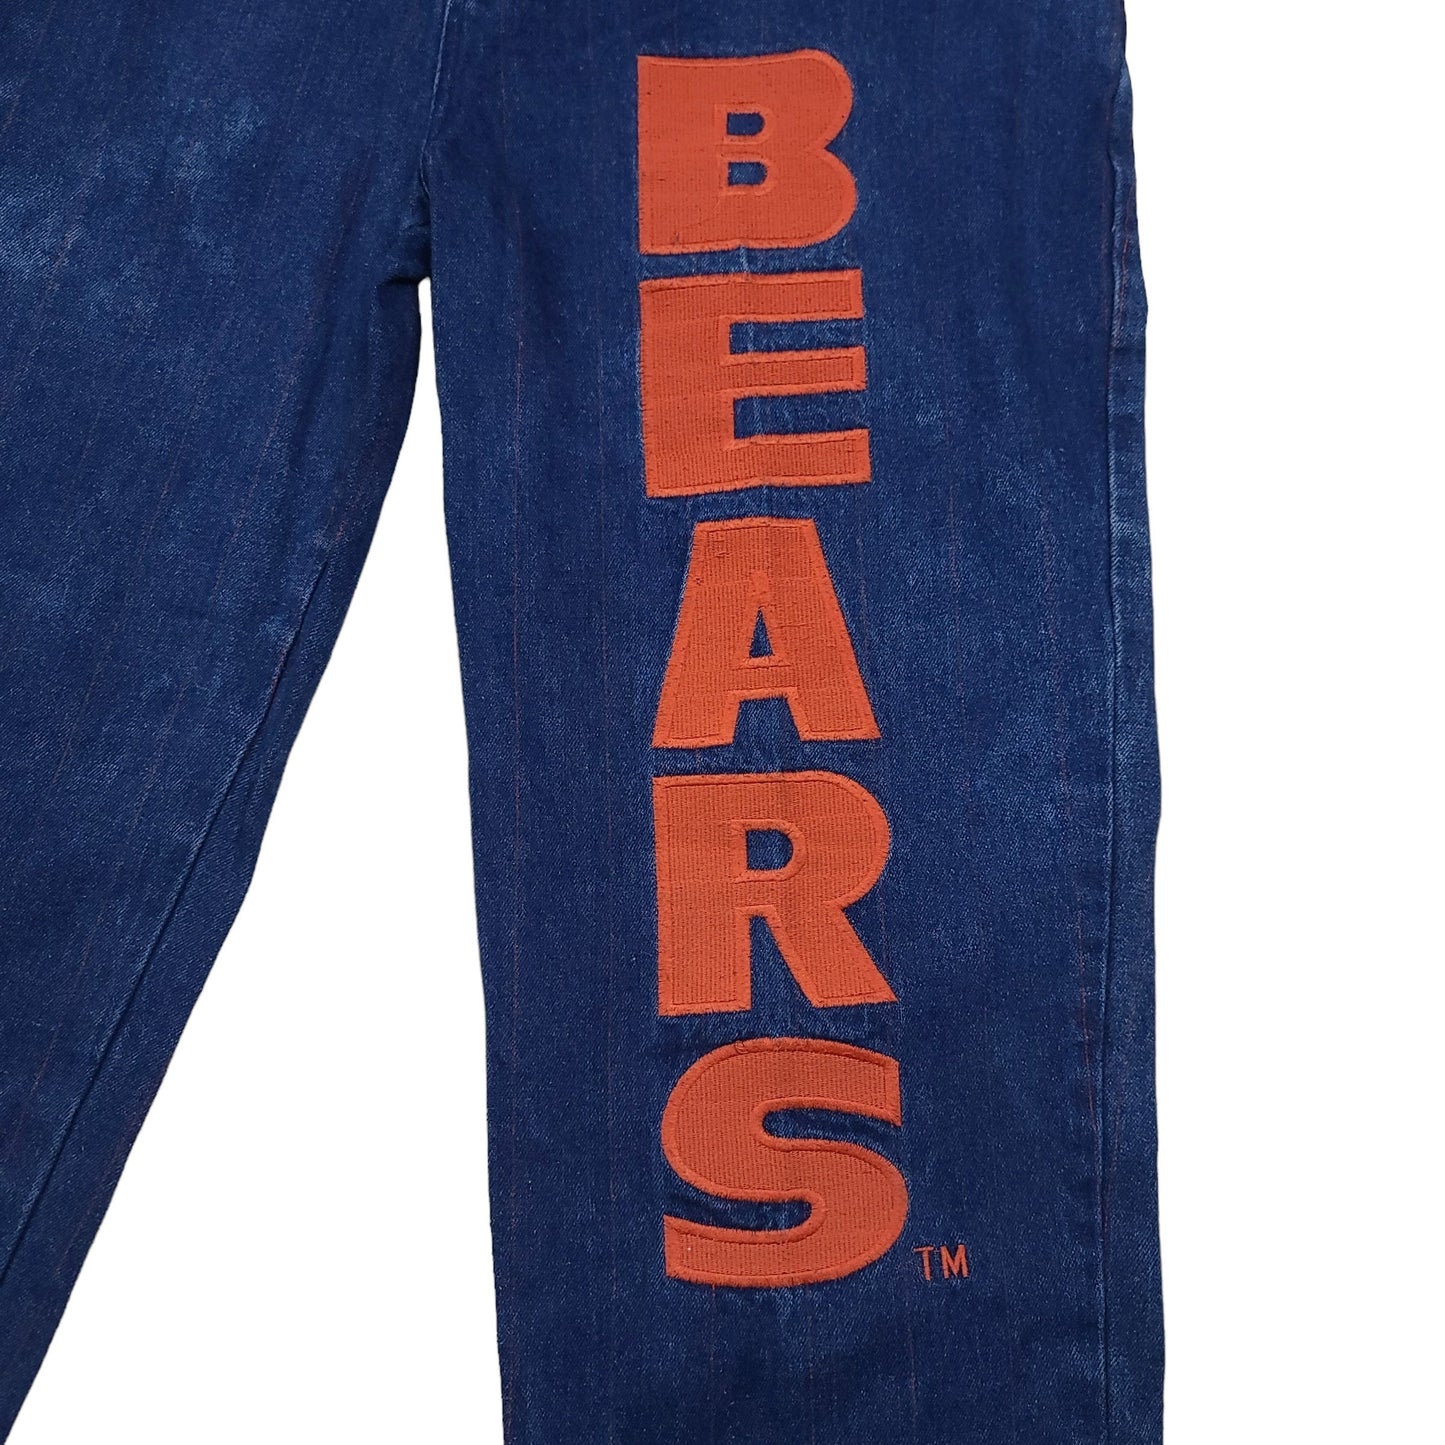 Vintage 90's Chicago Bears NFL Blue Denim Overalls